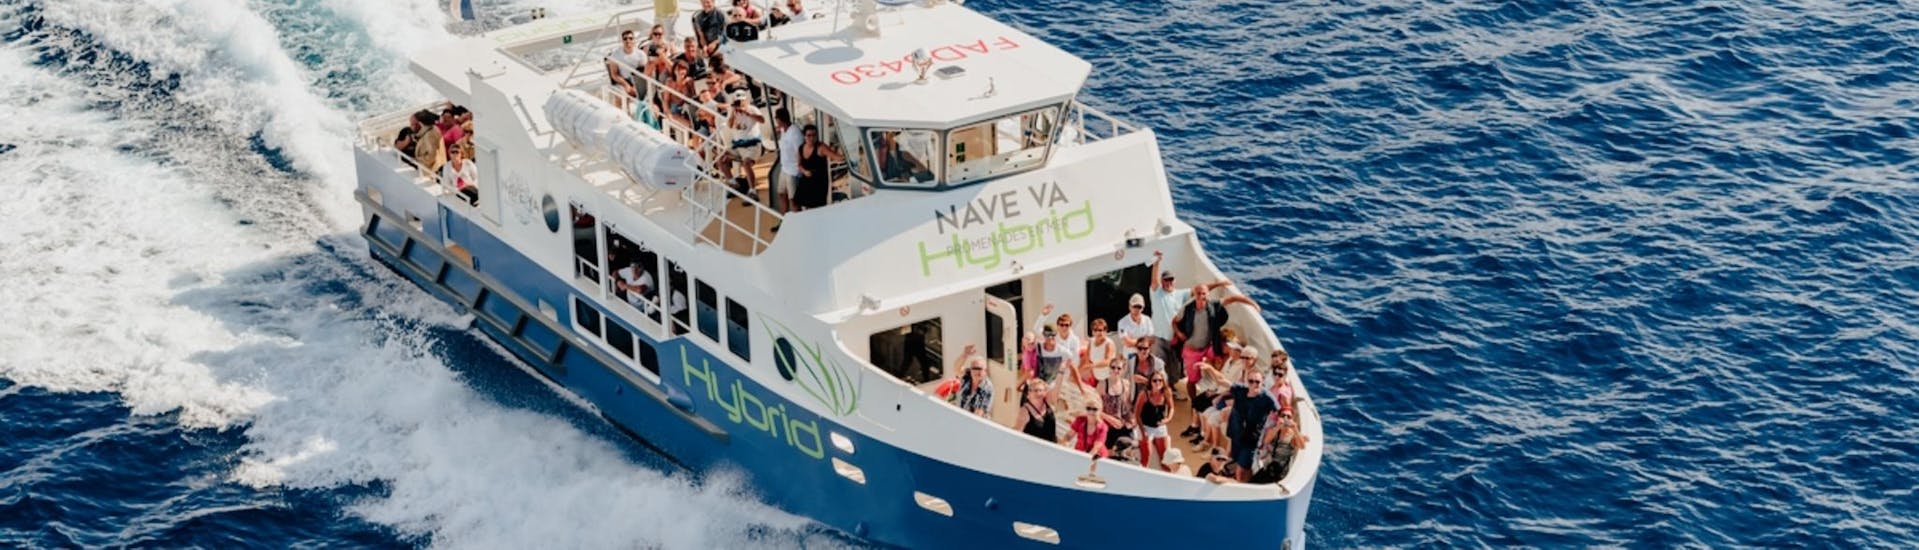 Gita in barca da Porto (Corsica) a Calanche di Piana  e visita turistica.